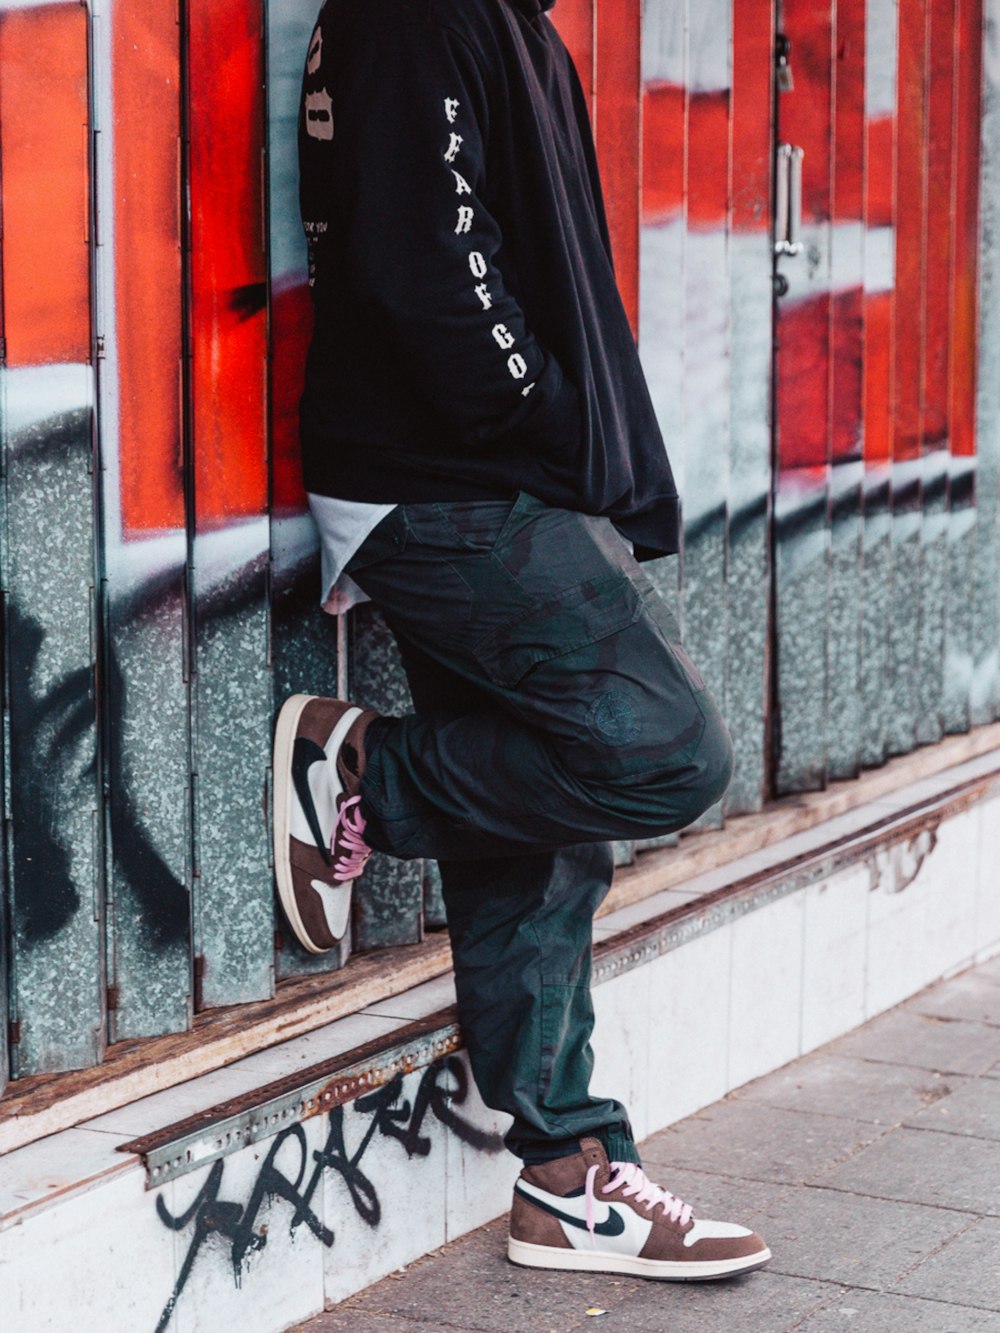 Homme en chaussures de basket nike noir et blanc et pantalon noir photo –  Photo Des portraits Gratuite sur Unsplash